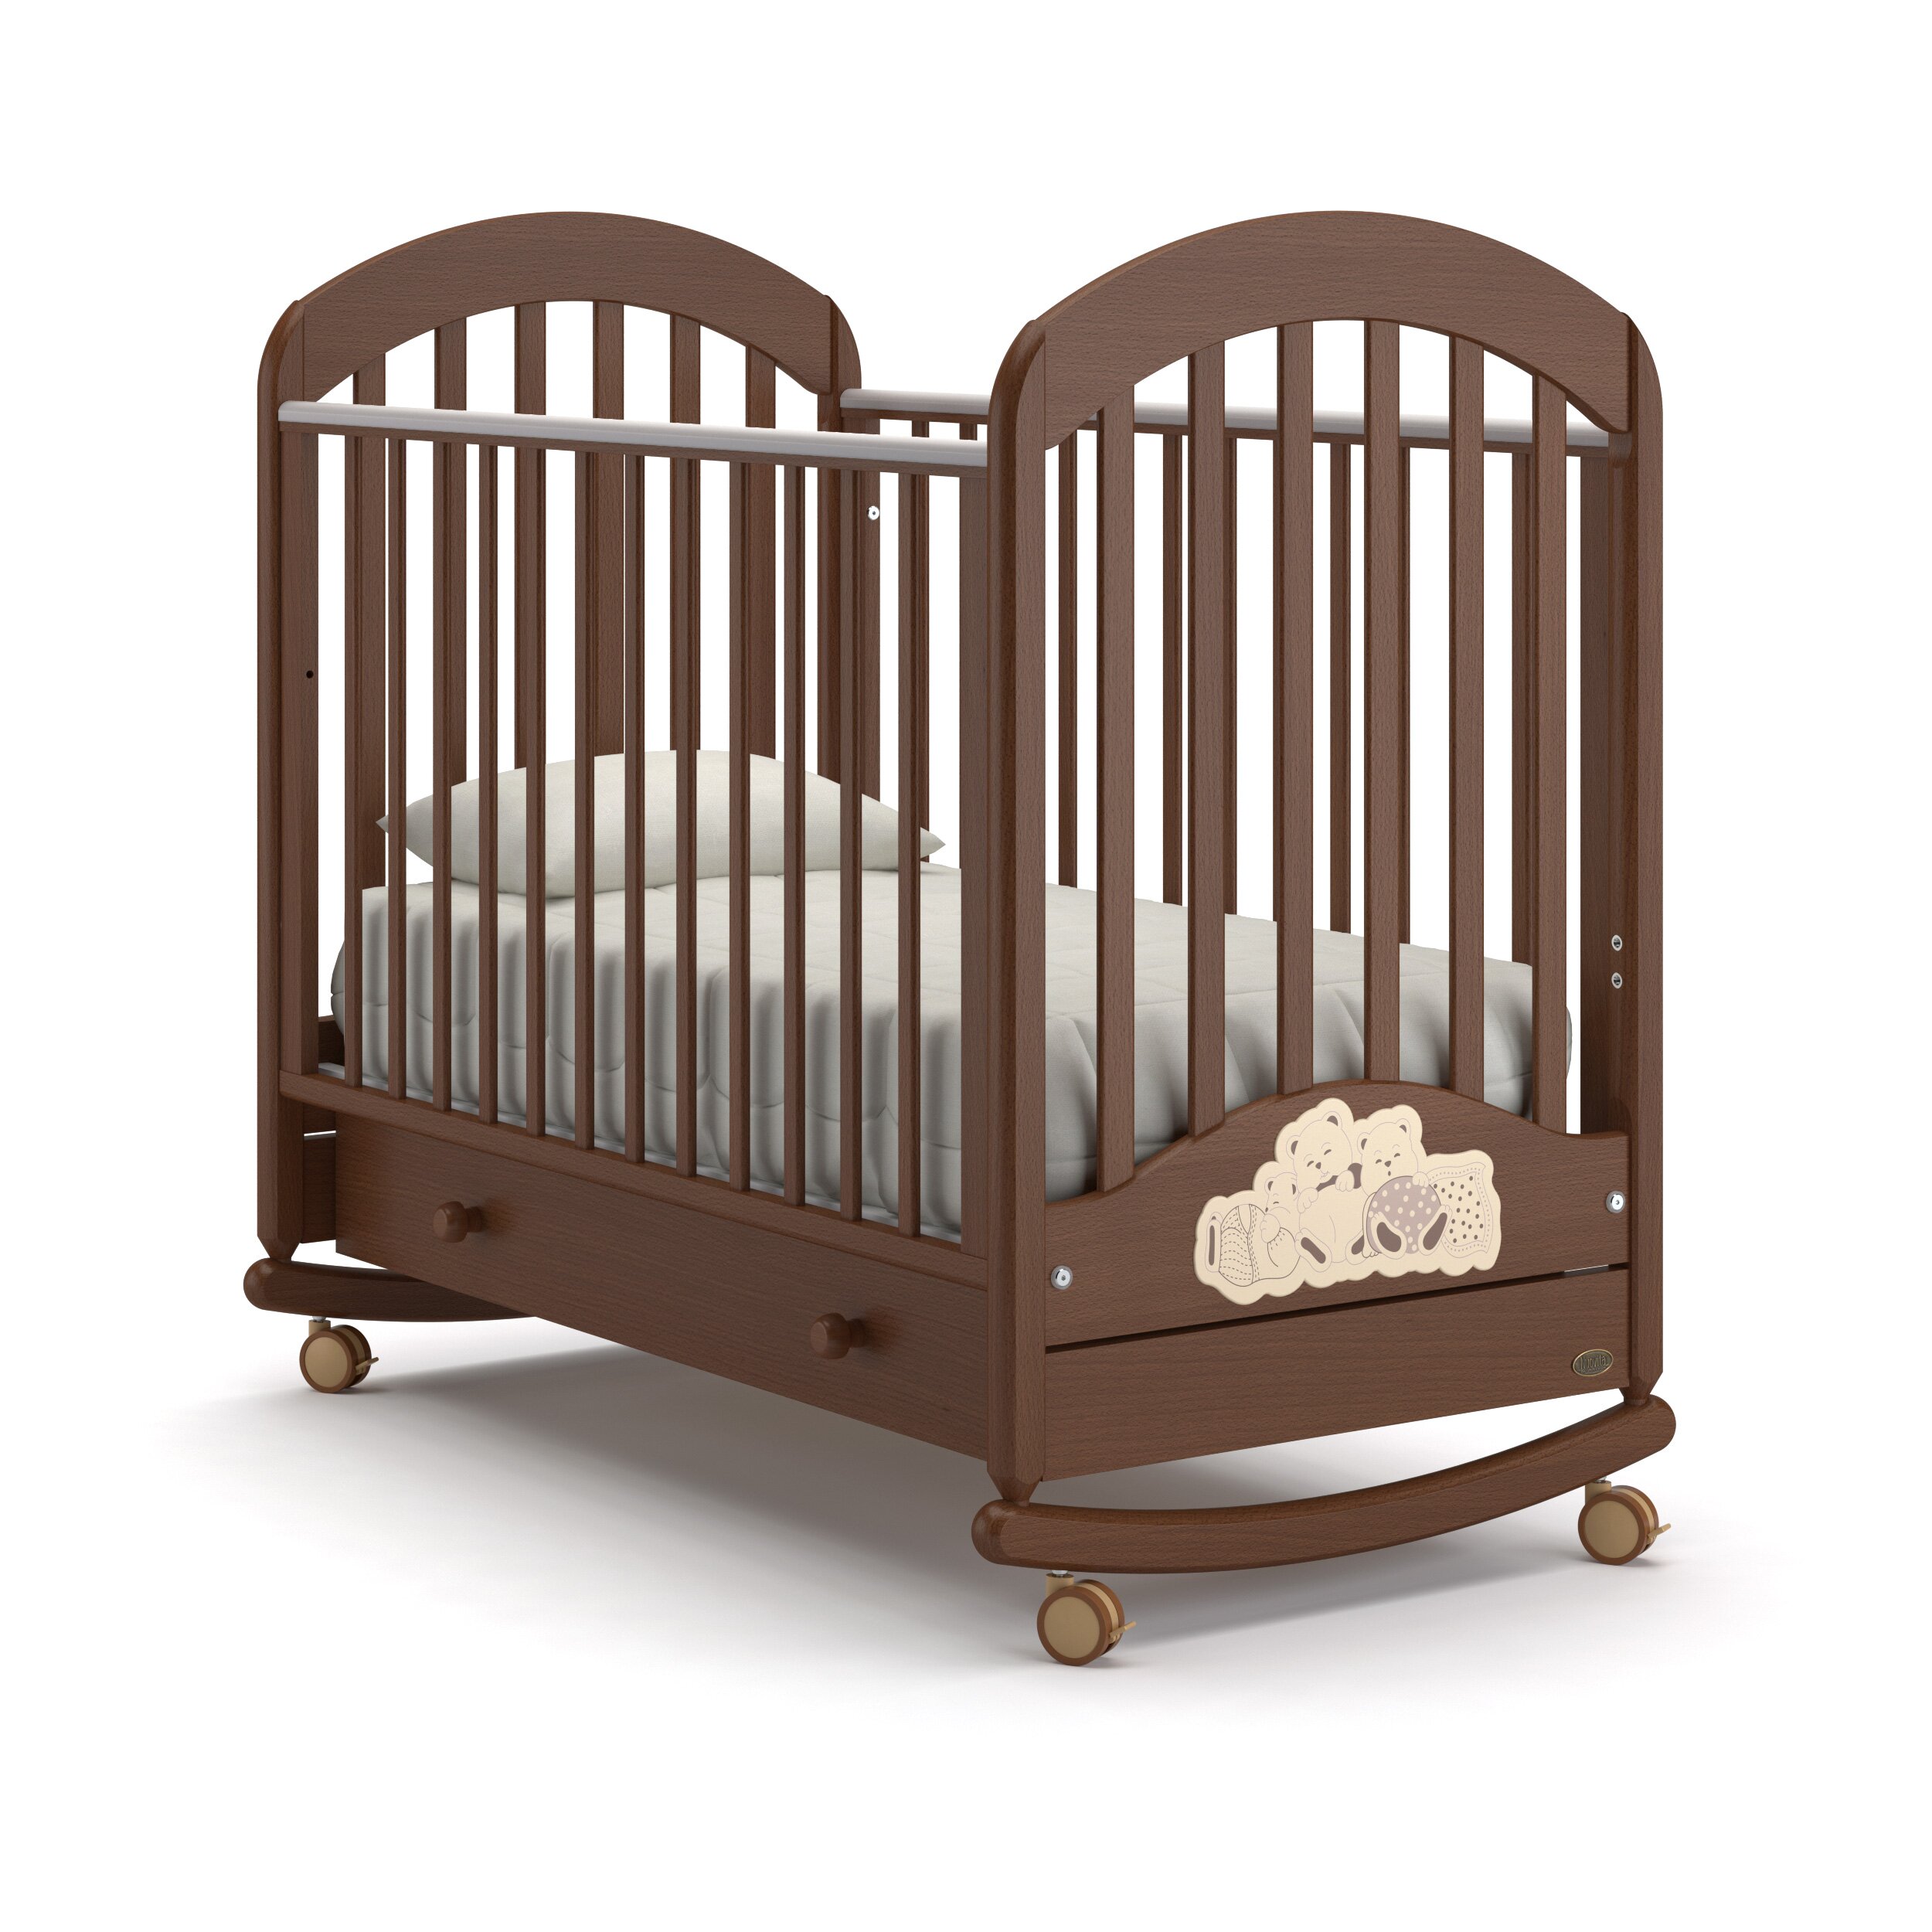 Детская кровать Nuovita Grano dondolo (качалка-колесо) Цвет: Орех